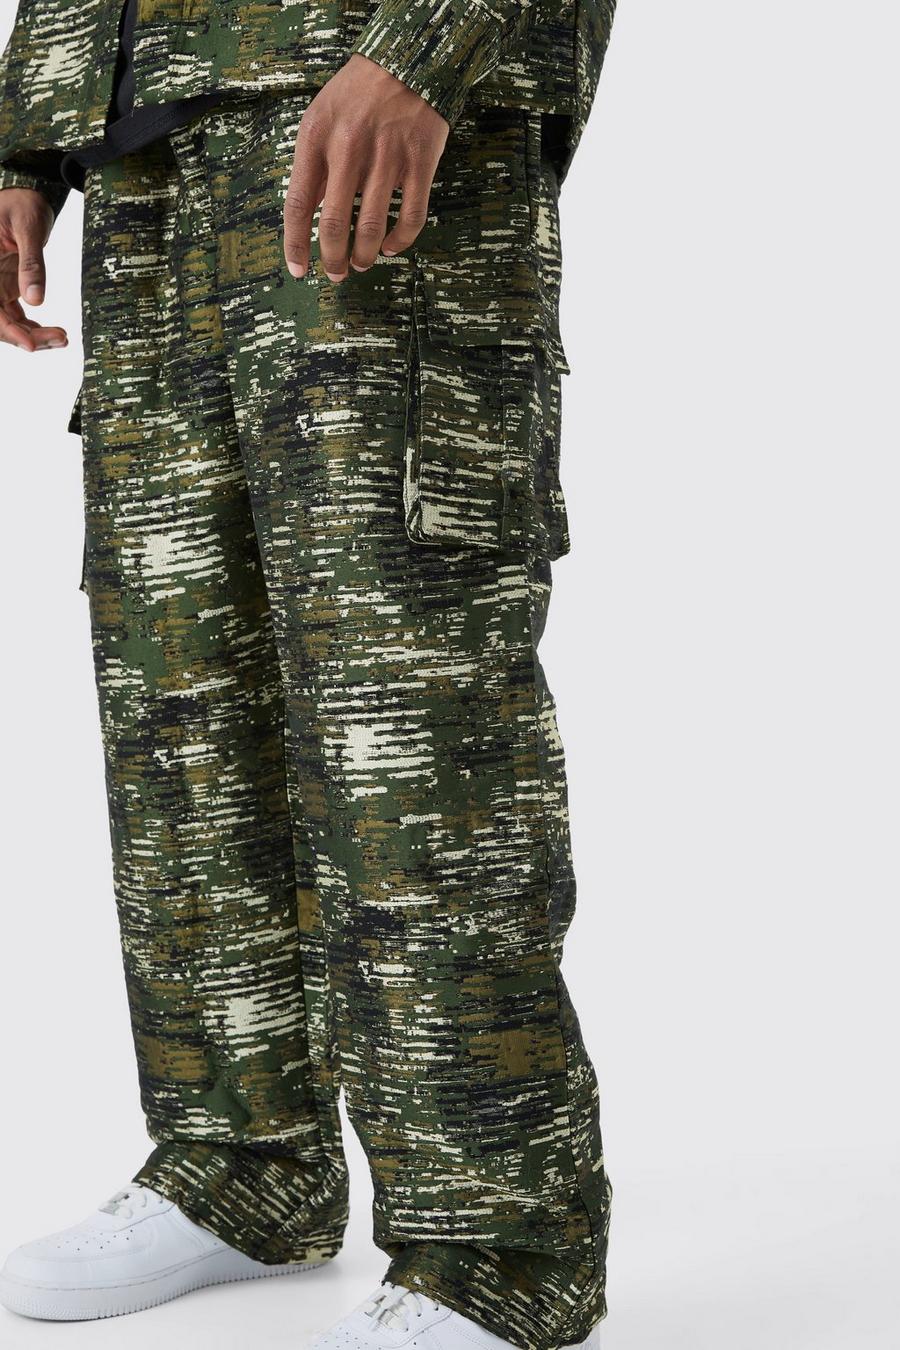 Camo Tall Baggy Camouflage Print Cargo Broek Met Textuur